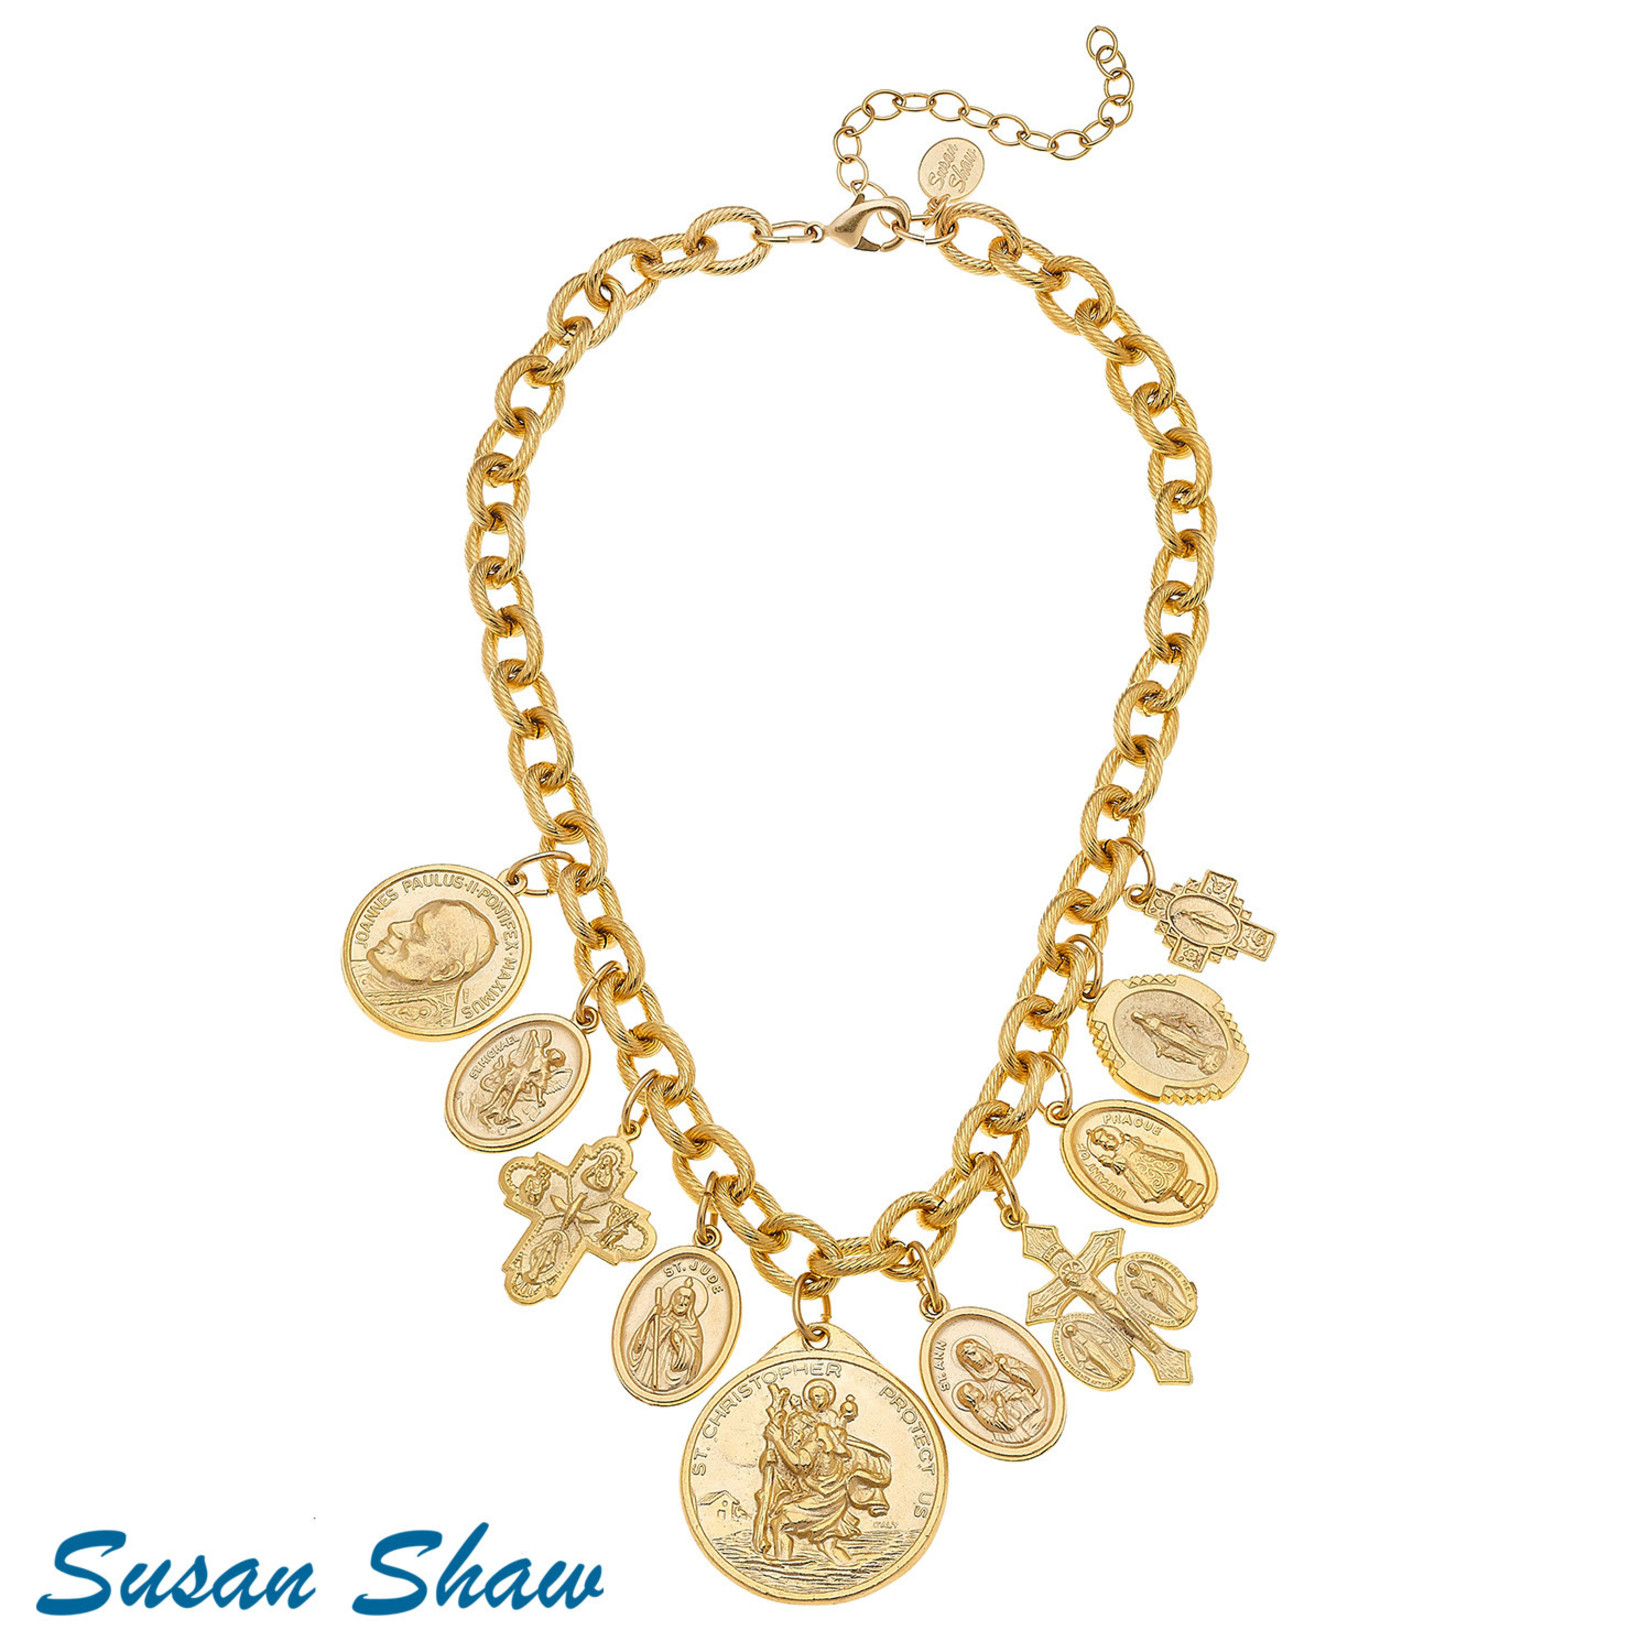 Susan Shaw Susan Shaw Gold Saints Charms Necklace